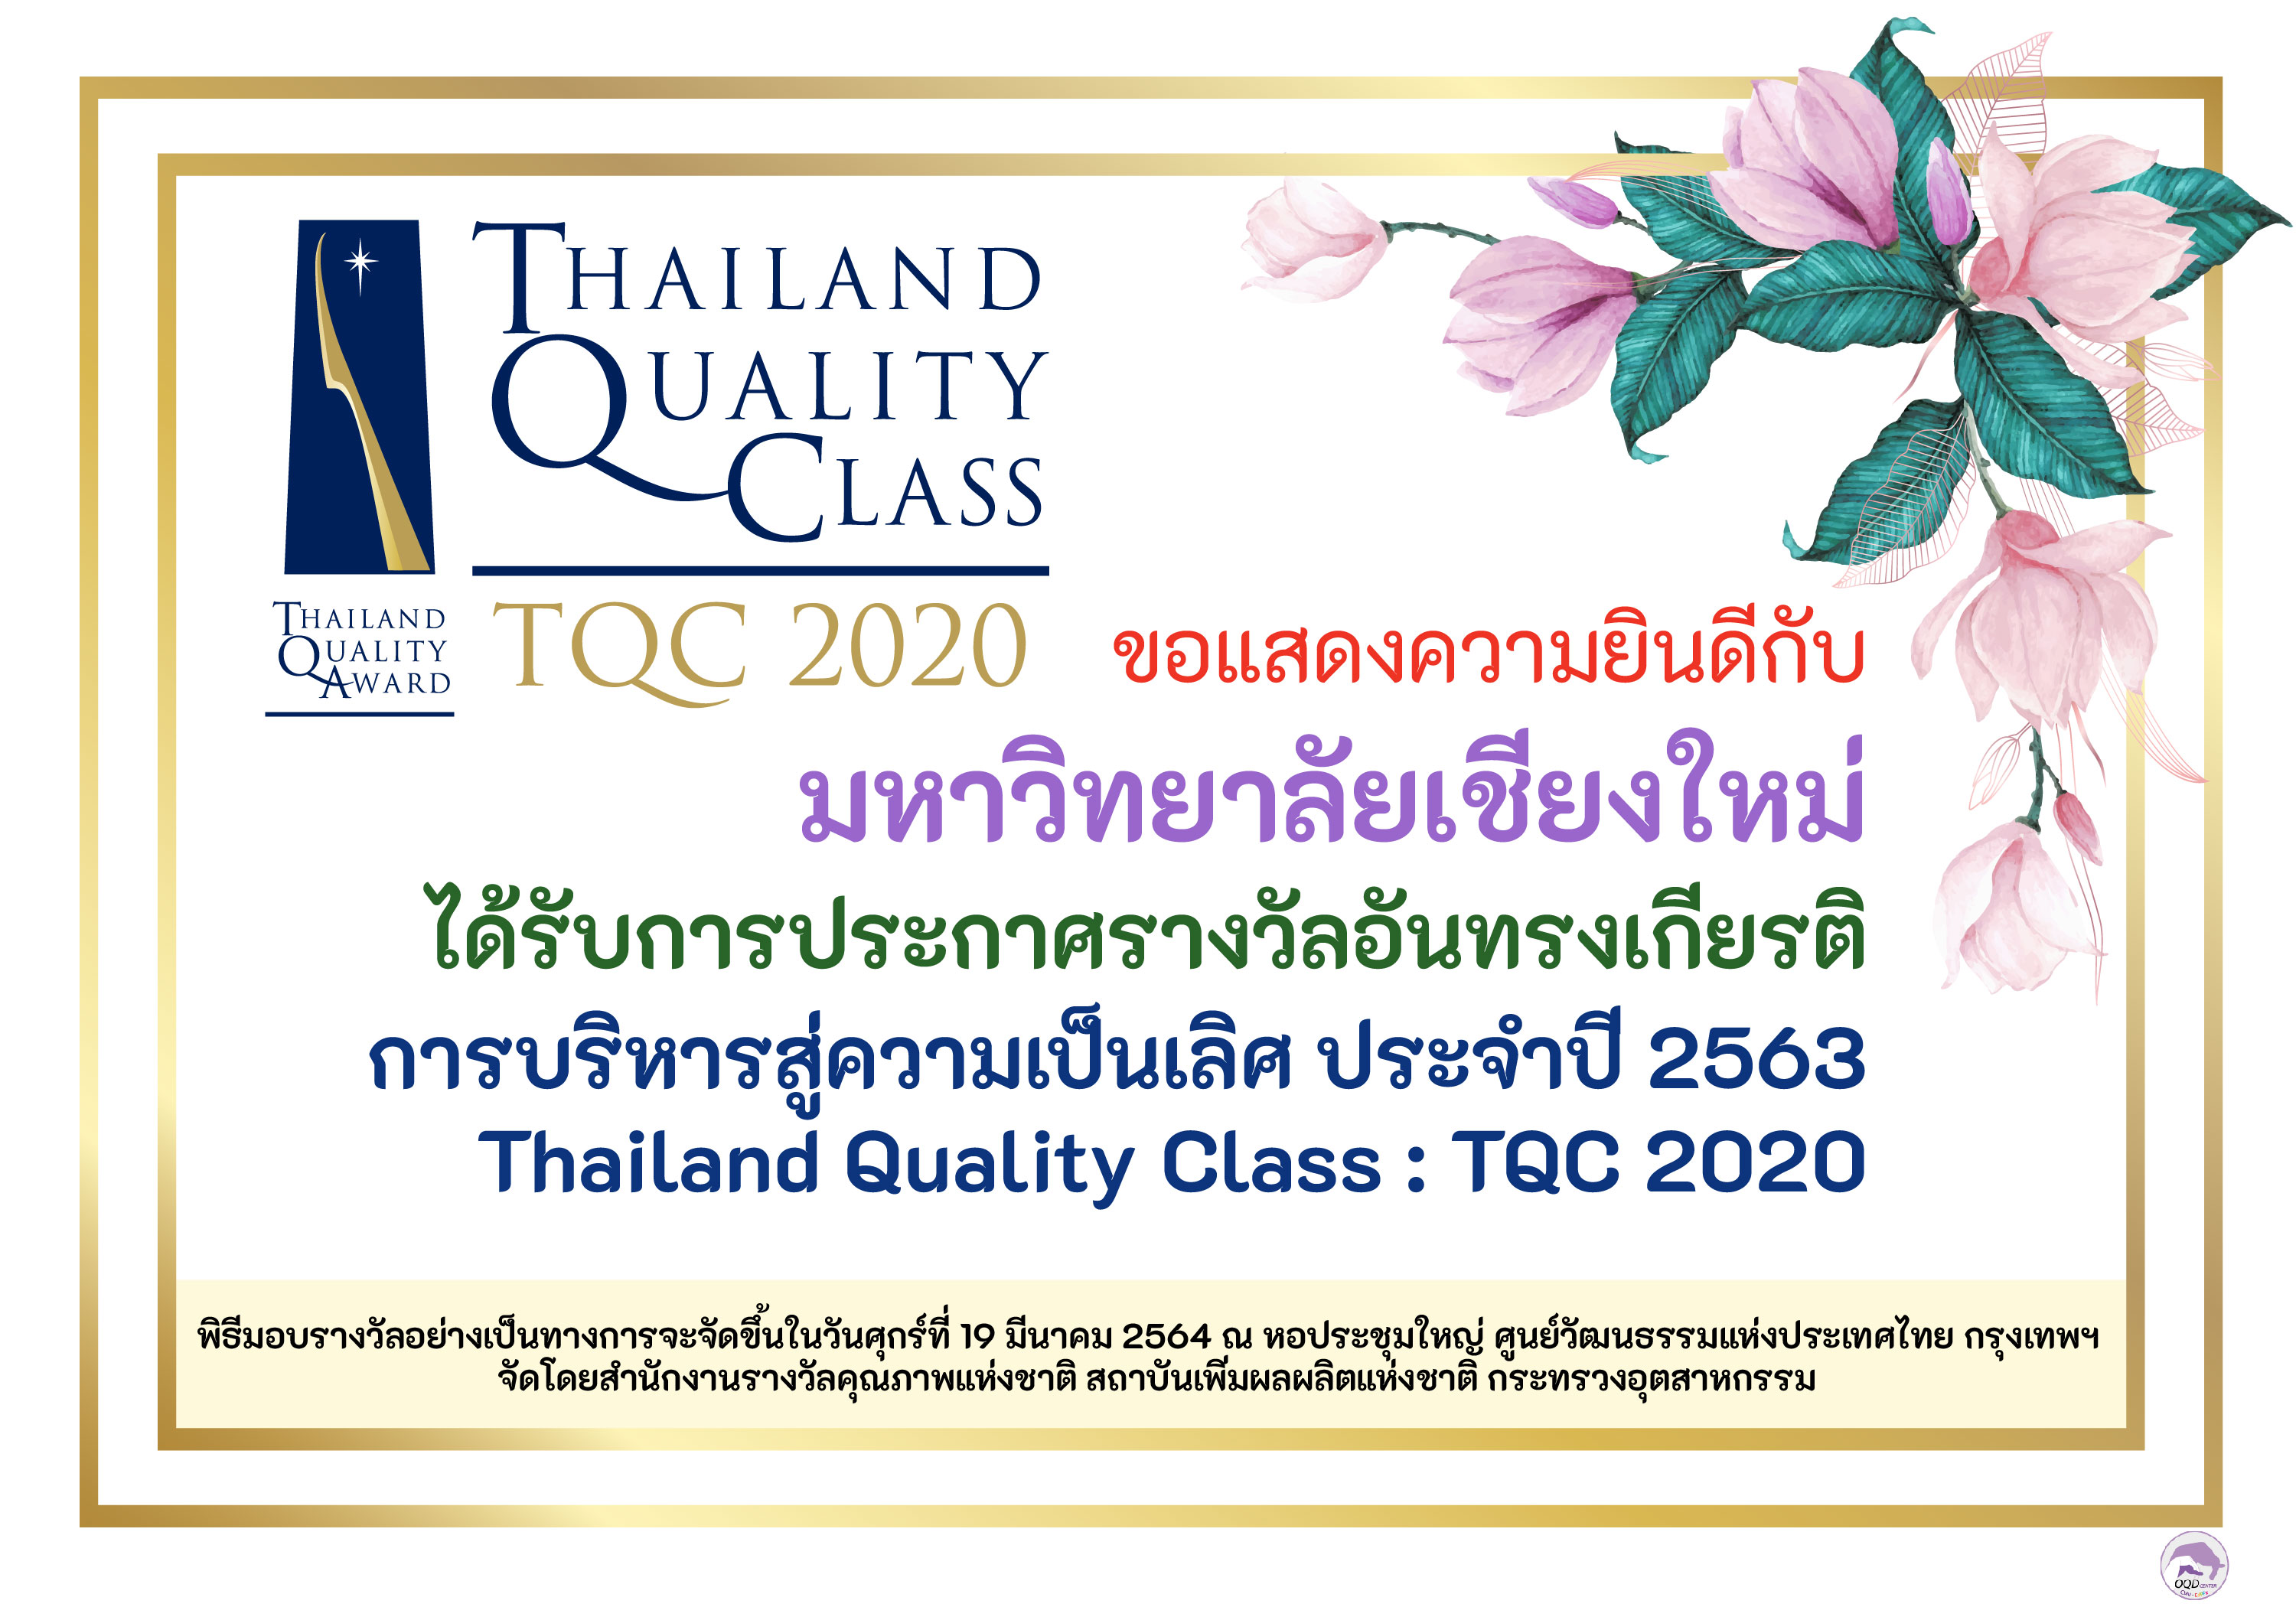 ขอแสดงความยินดีกับมหาวิทยาลัยเชียงใหม่ ได้รับการประกาศรางวัลการบริหารสู่ความเป็นเลิศ ประจำปี 2563 (Thailand Quality Class : TQC 2020)